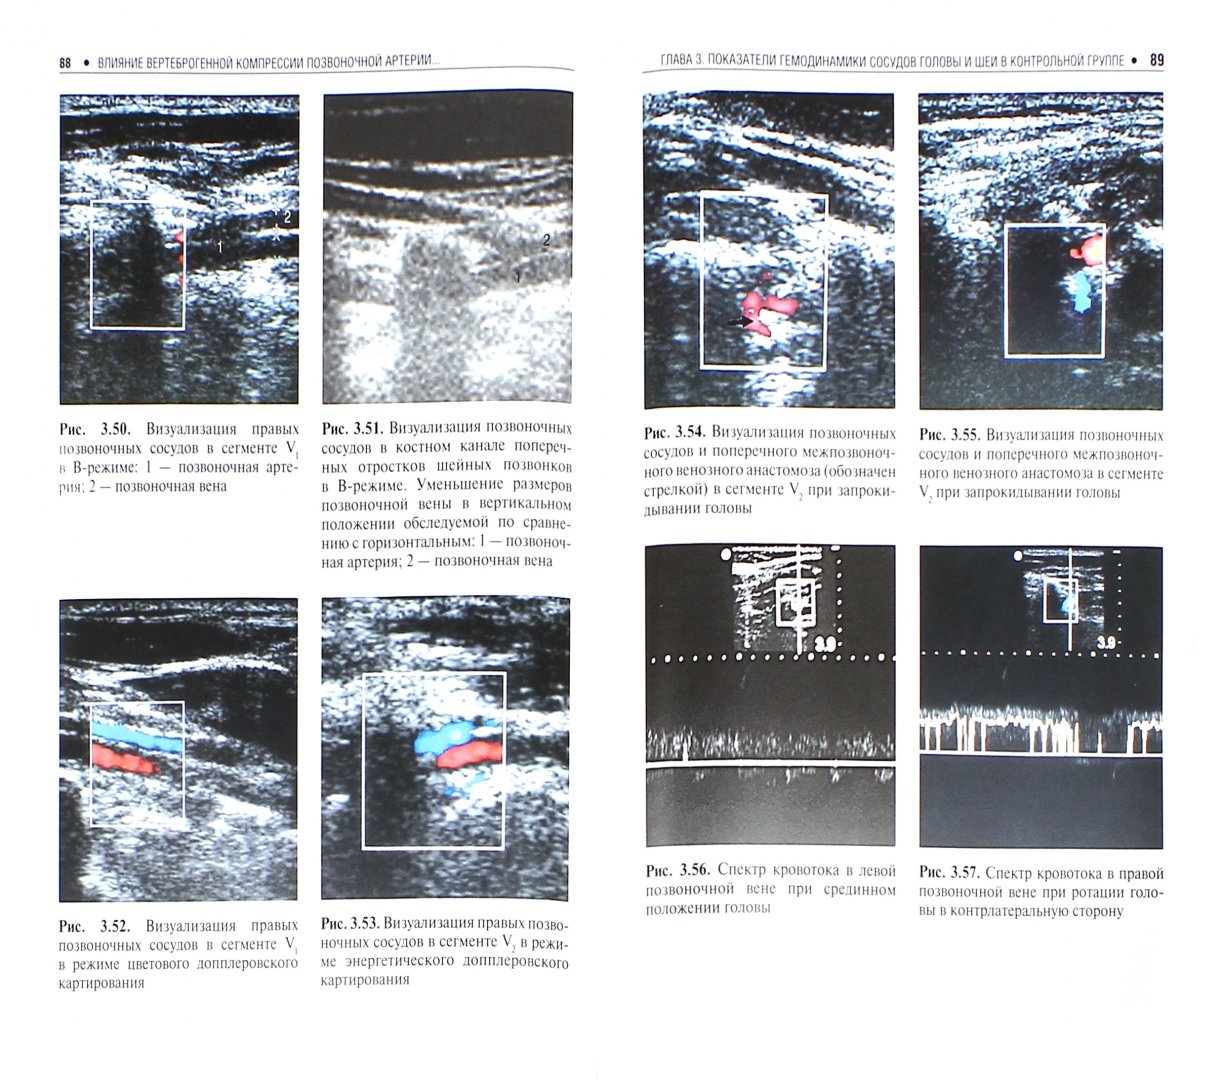 Иллюстрация 1 из 5 для Влияние вертеброгенной компрессии позвоночной артерии на гемодинамические параметры сосудов головы - Калинин, Сучков, Виноградов, Калина | Лабиринт - книги. Источник: Лабиринт